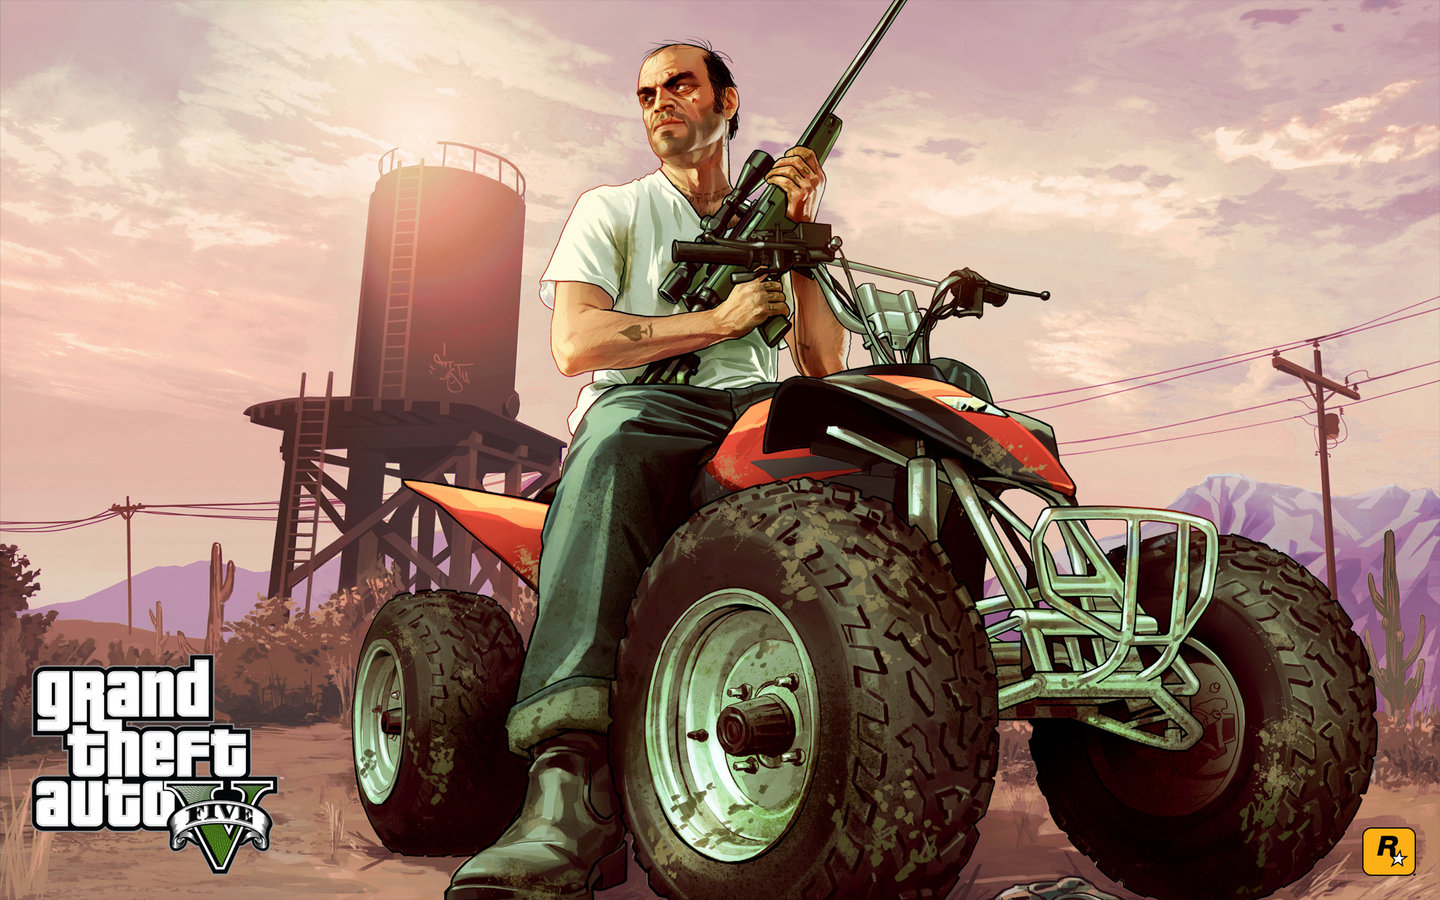 Grand Theft Auto V - PS3 Wallpaper